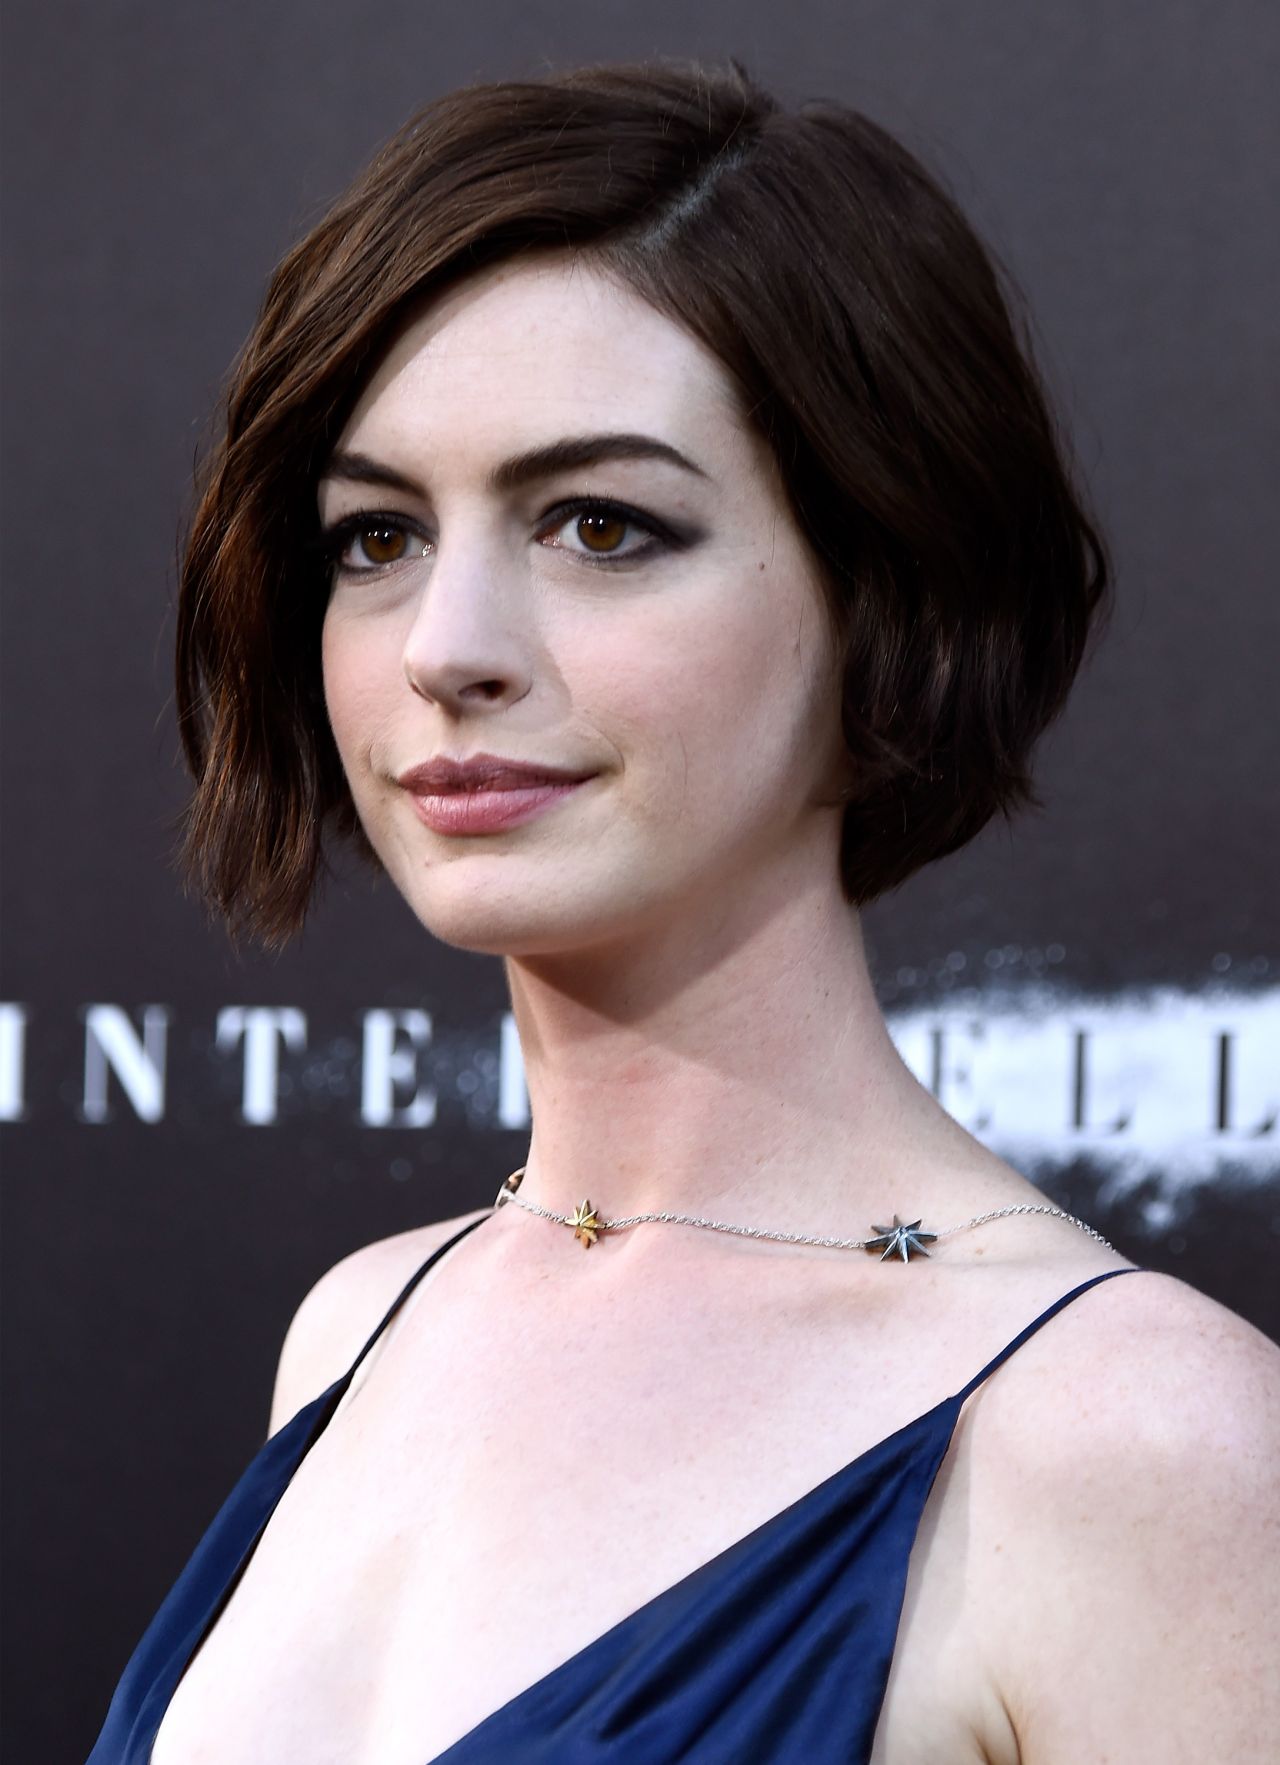 Anne Hathaway – ‘Interstellar’ Premiere in Hollywood